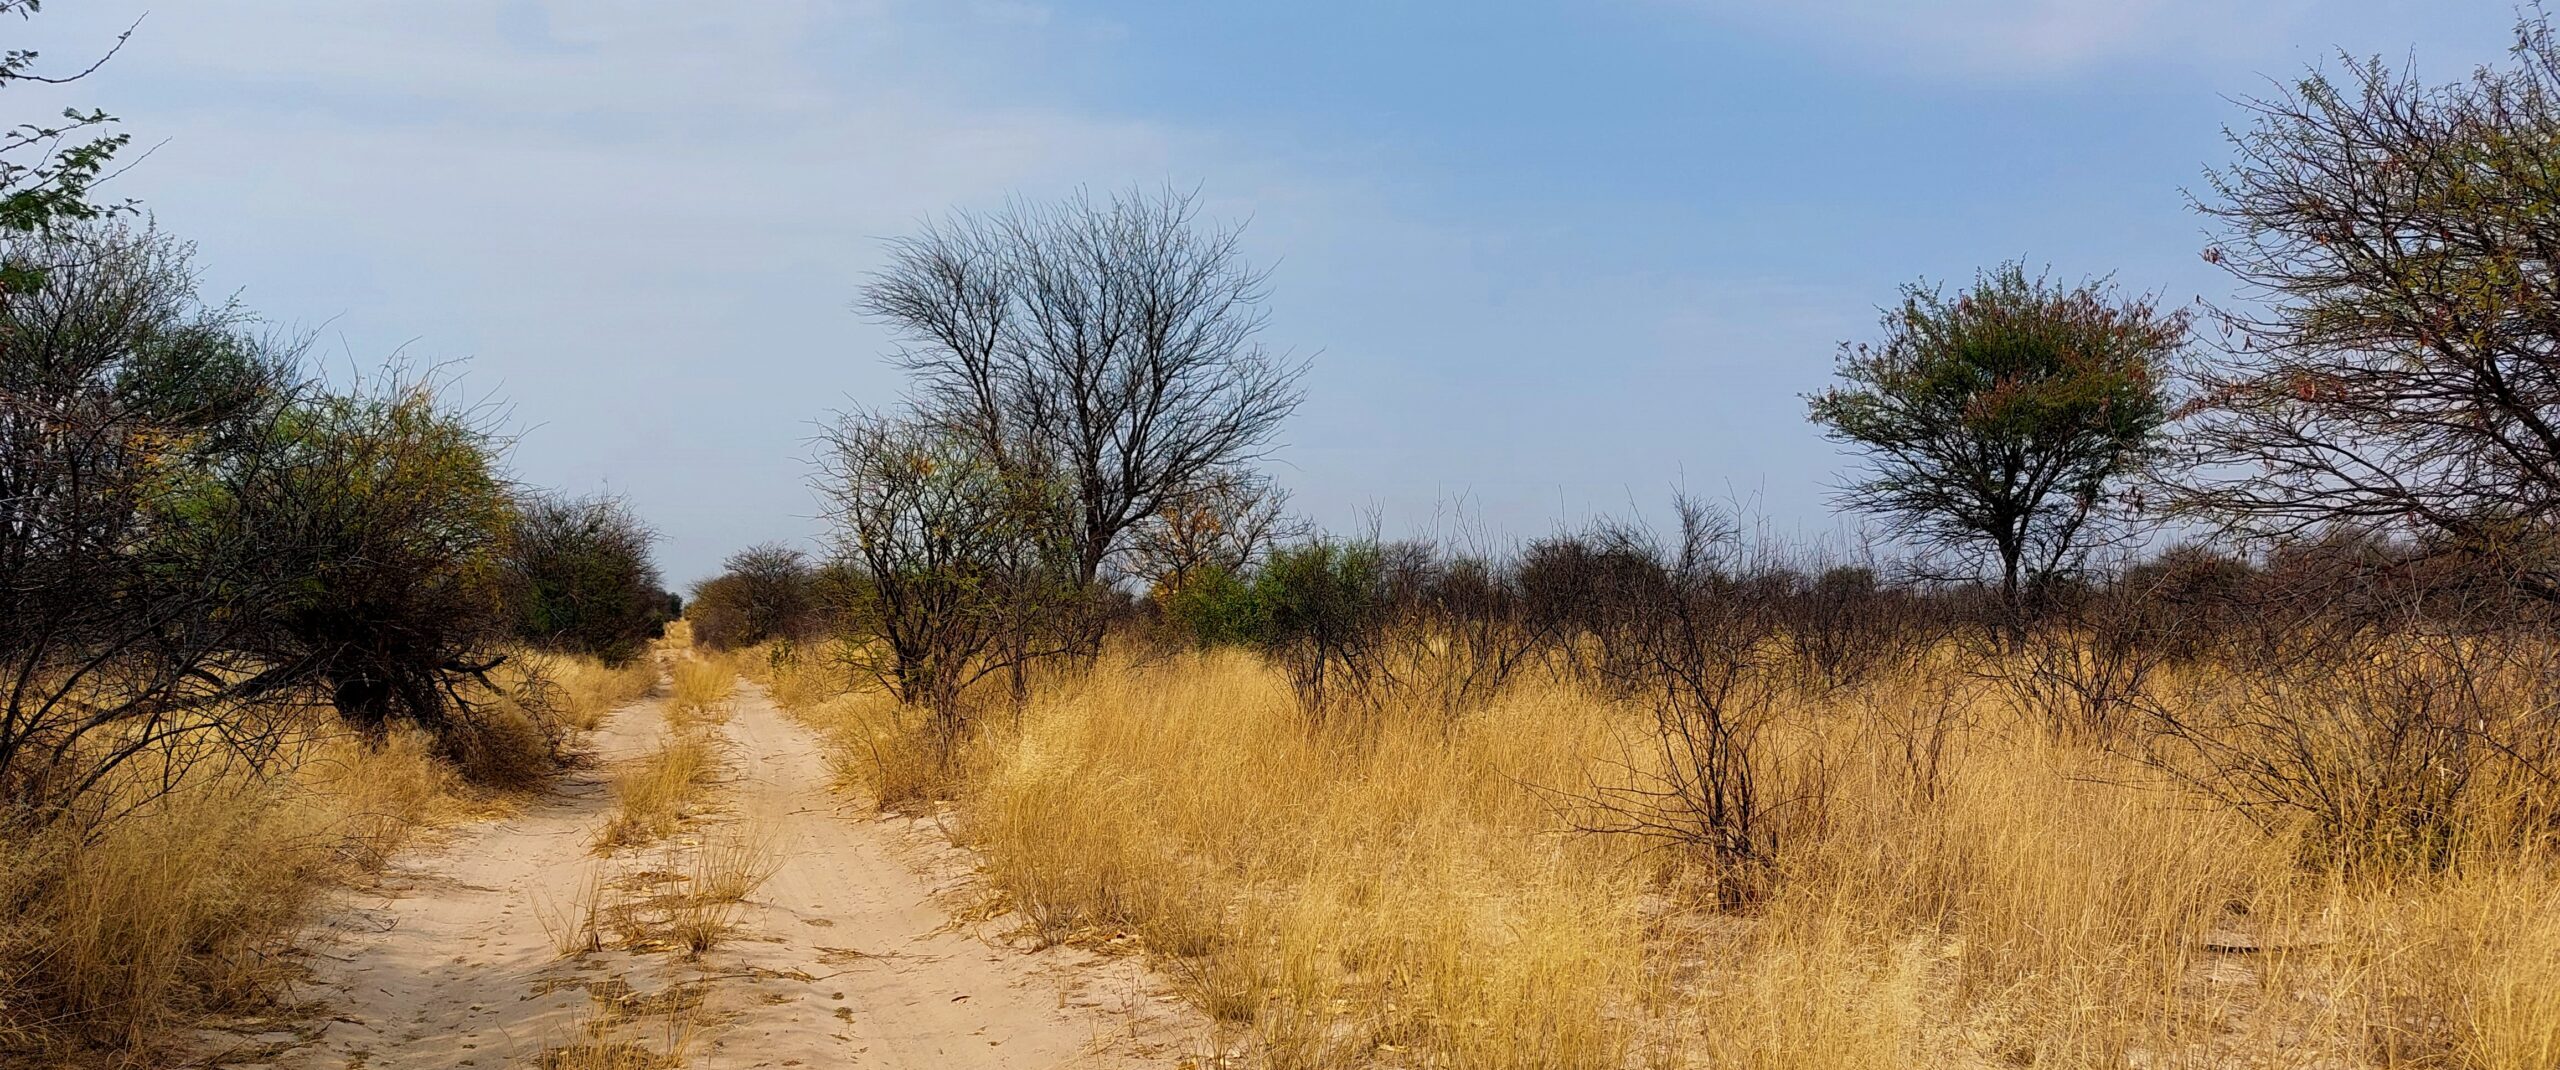 20 – Abenteuer Kalahari